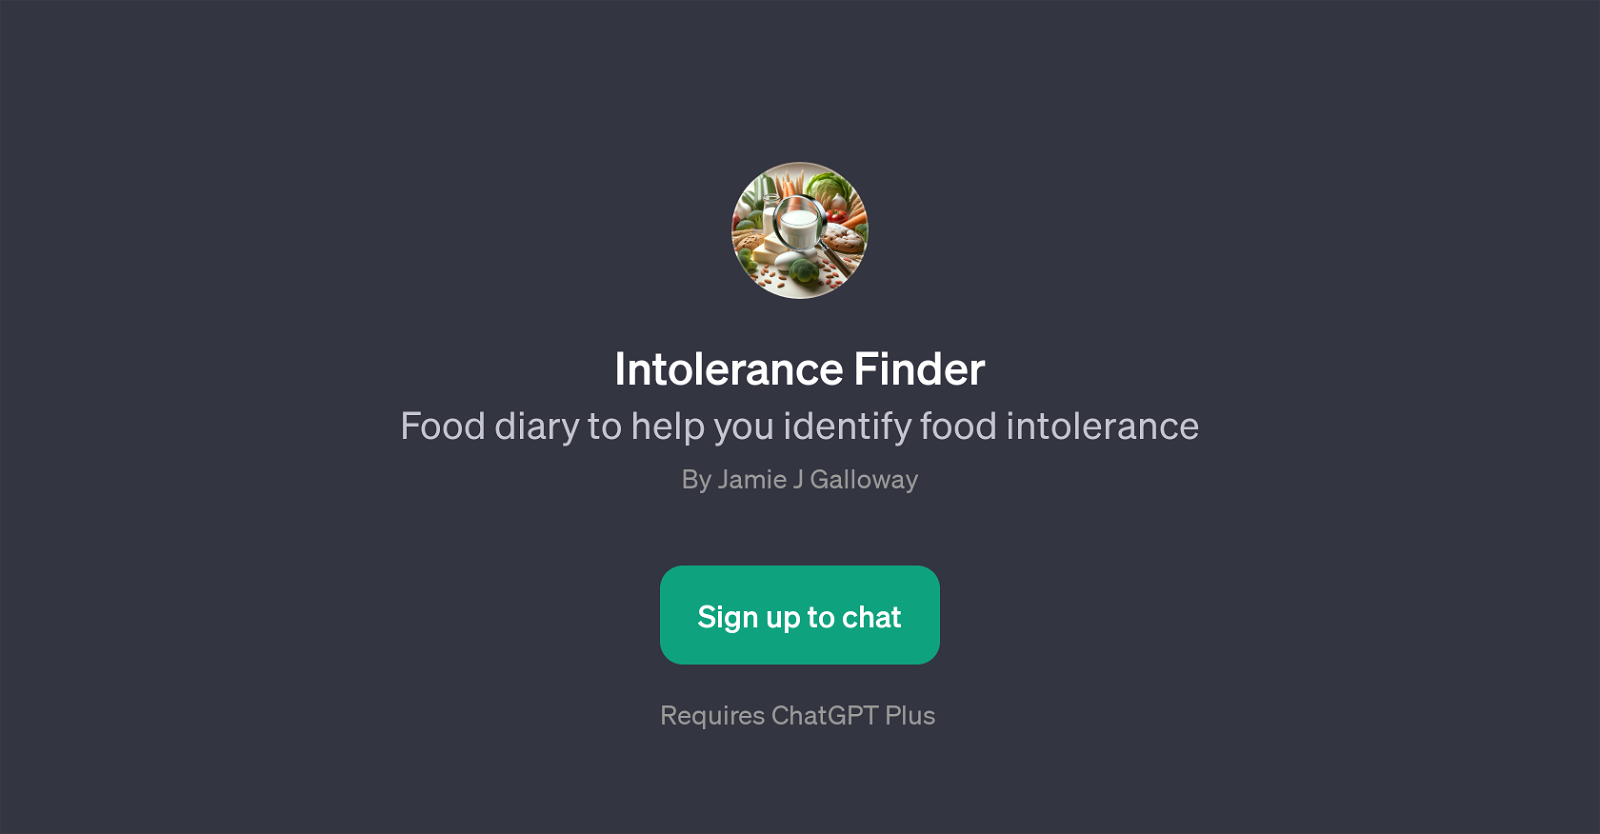 Intolerance Finder website